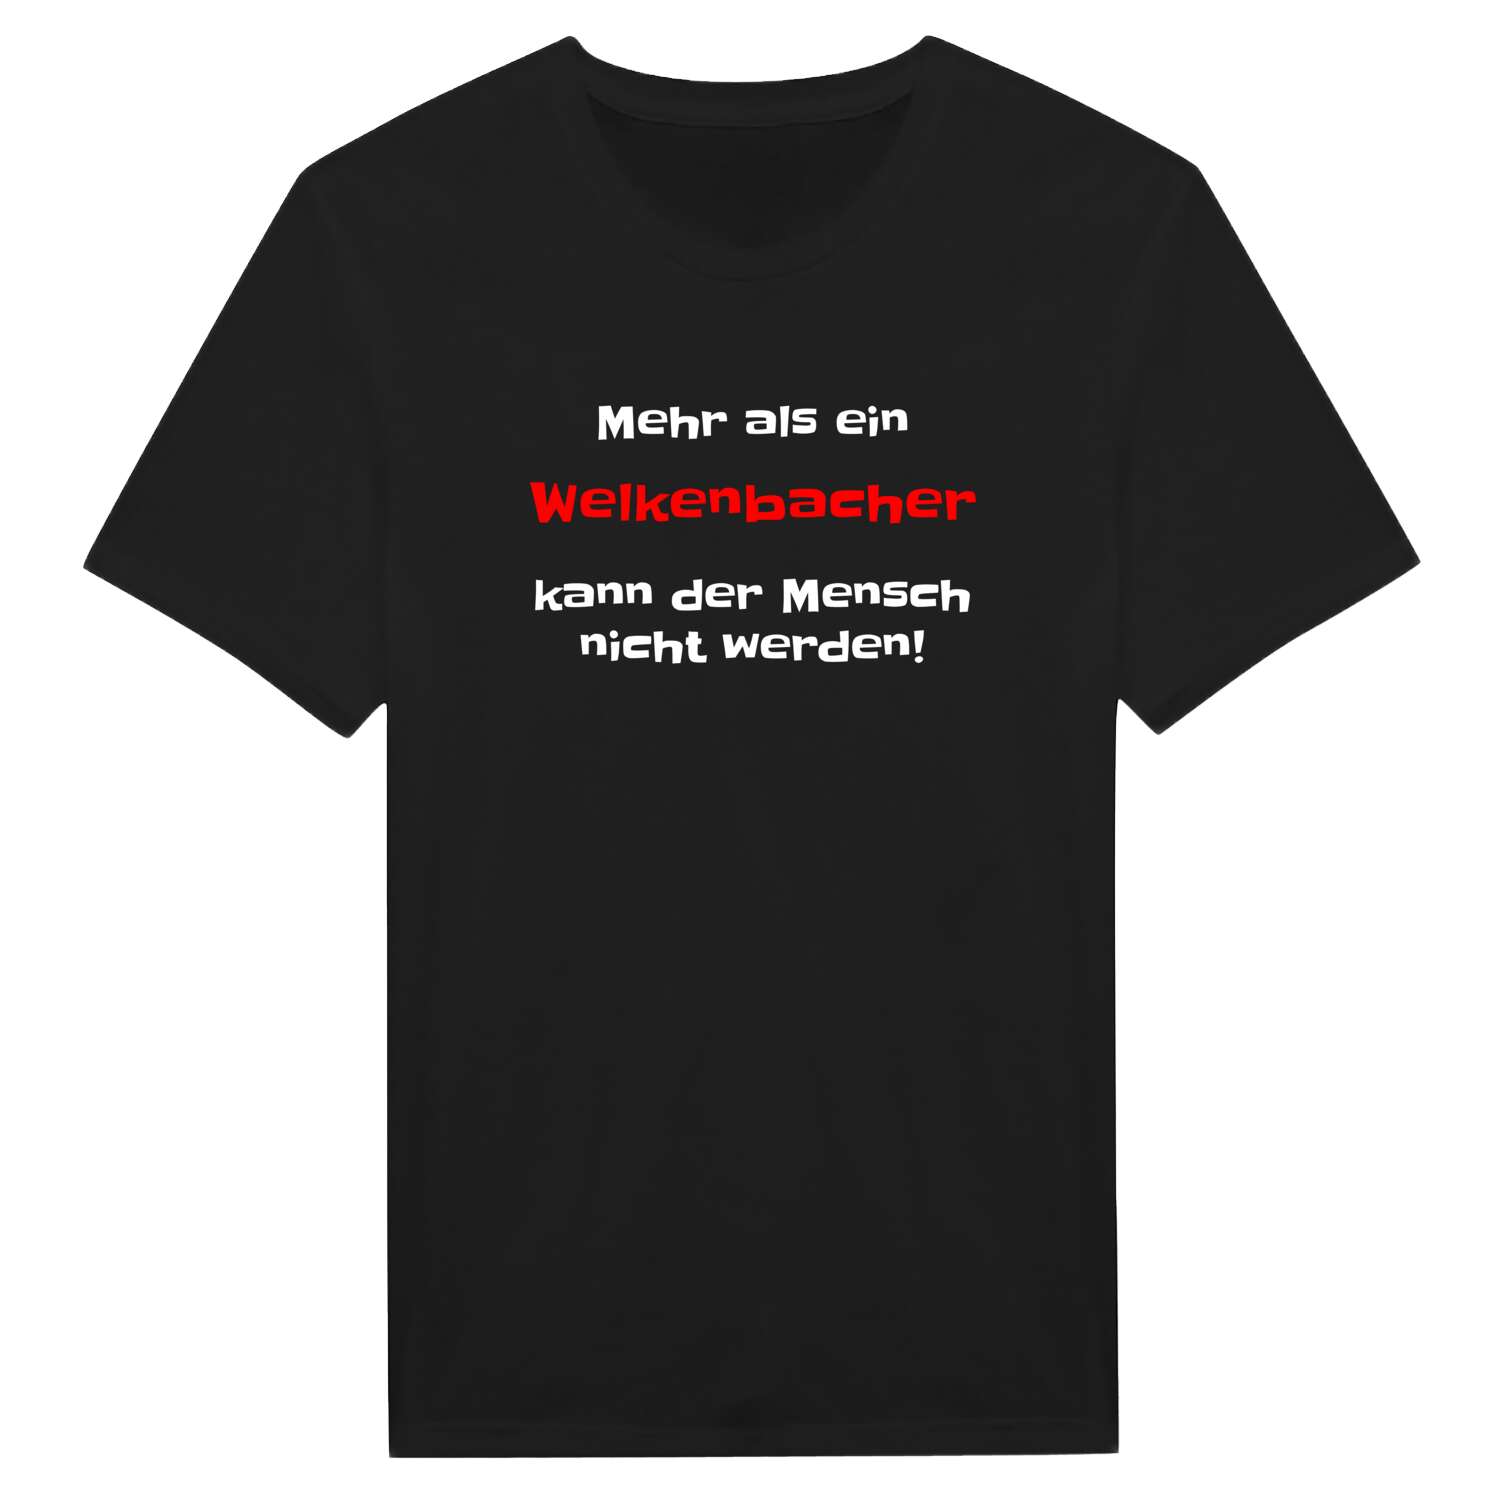 Welkenbach T-Shirt »Mehr als ein«